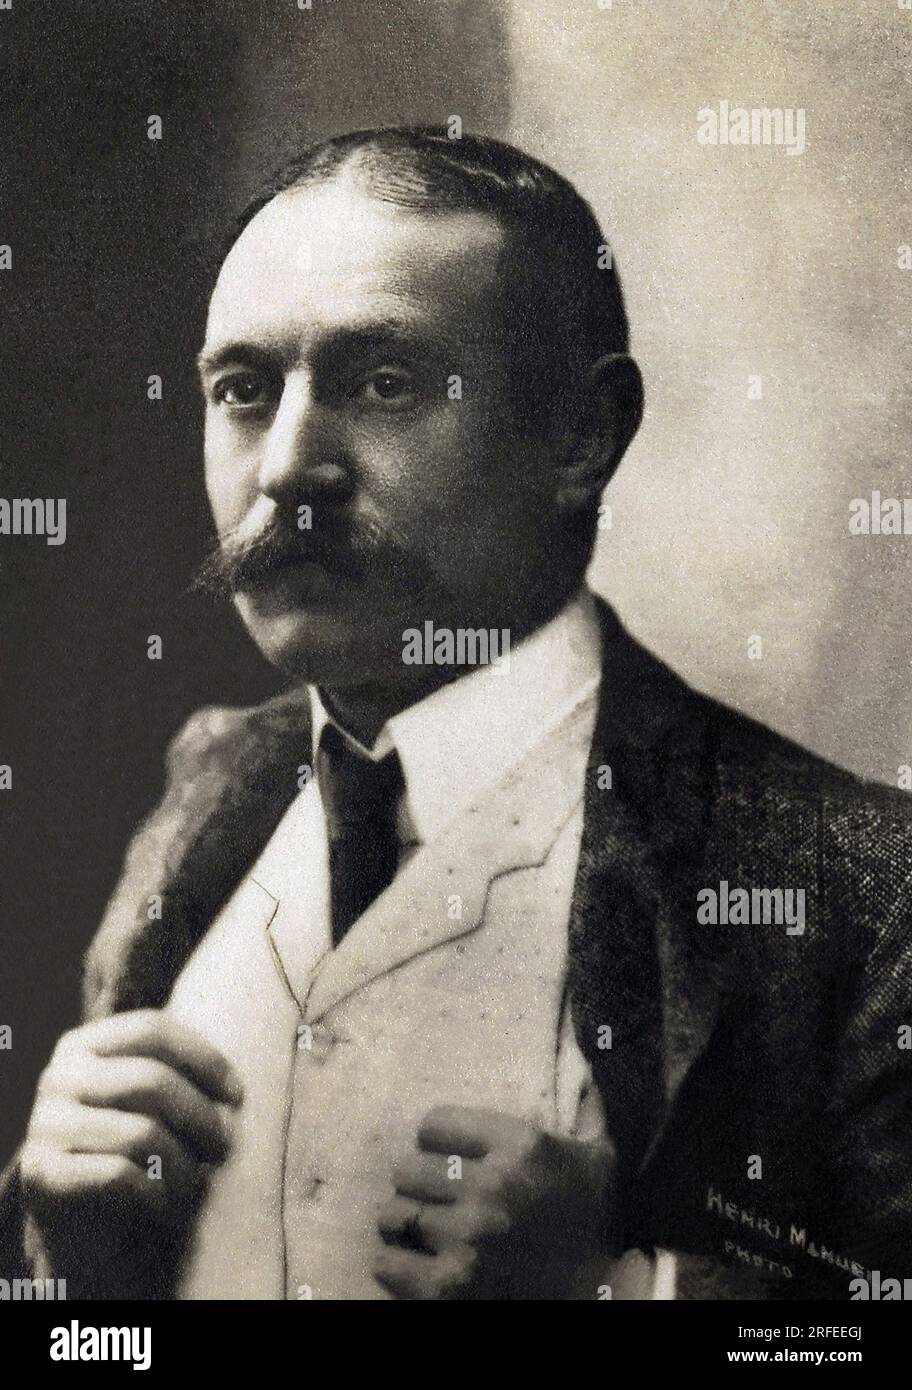 Portrait de Firmin Gemier (1869-1933), acteur, metteur en scene et directeur de Theatre francais. Photographie, Debüt du 20e siecle. Stockfoto